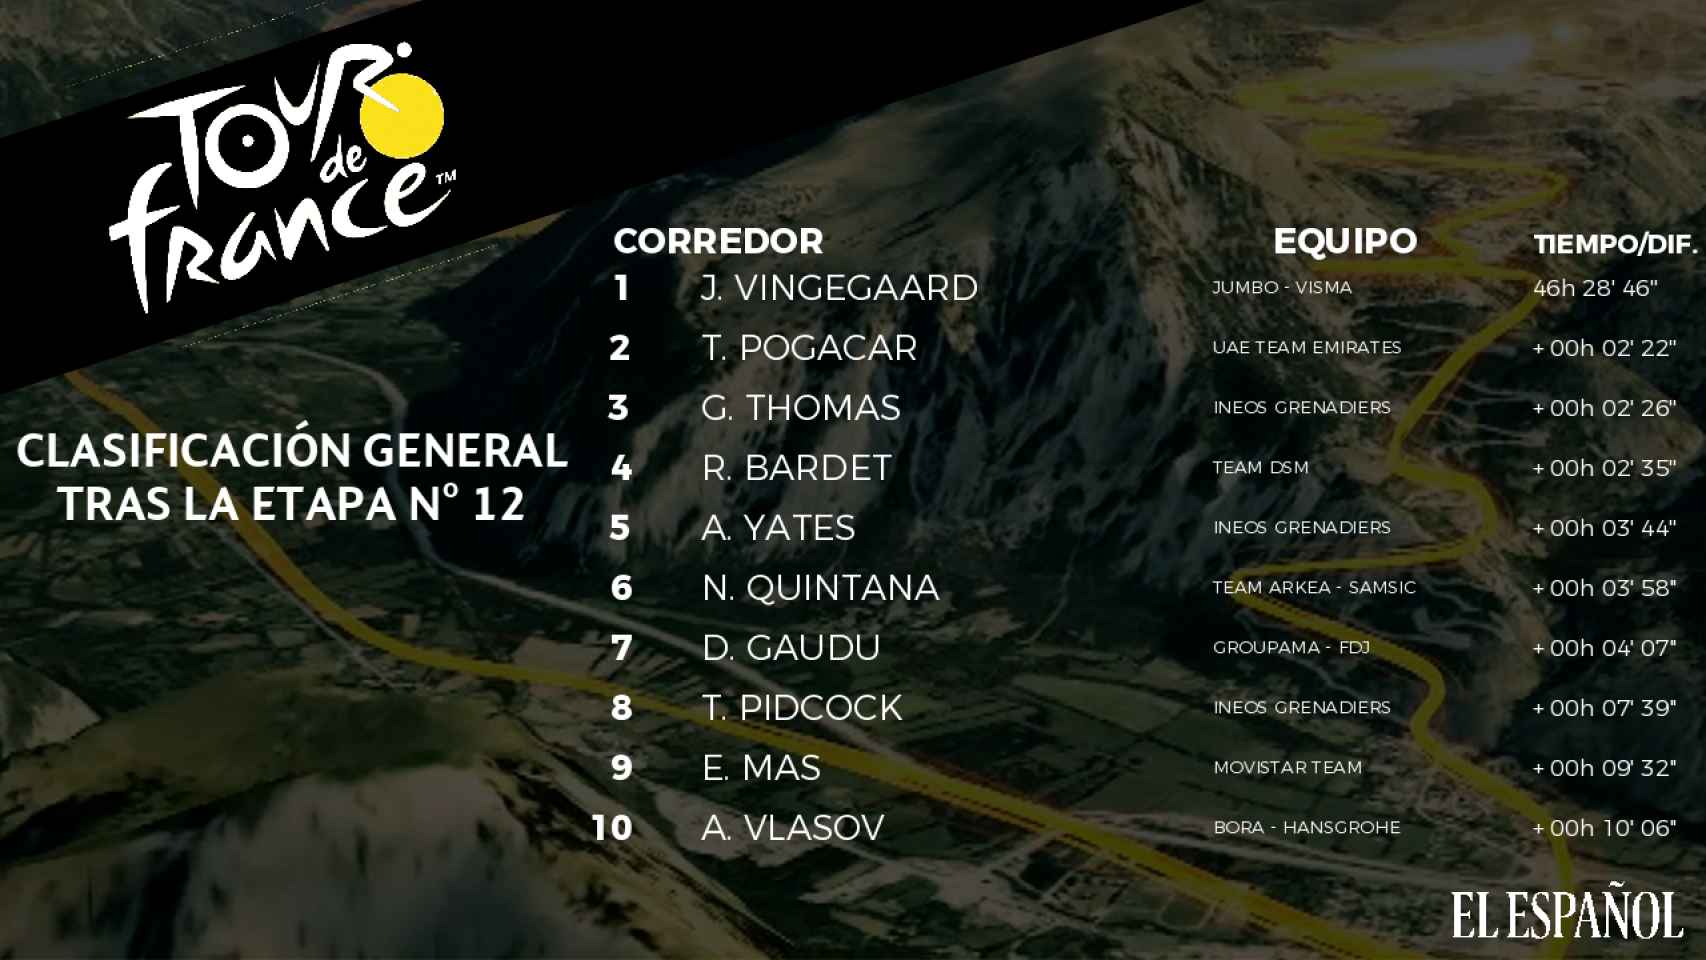 La clasificación general del Tour de Francia 2022 tras la etapa 12.